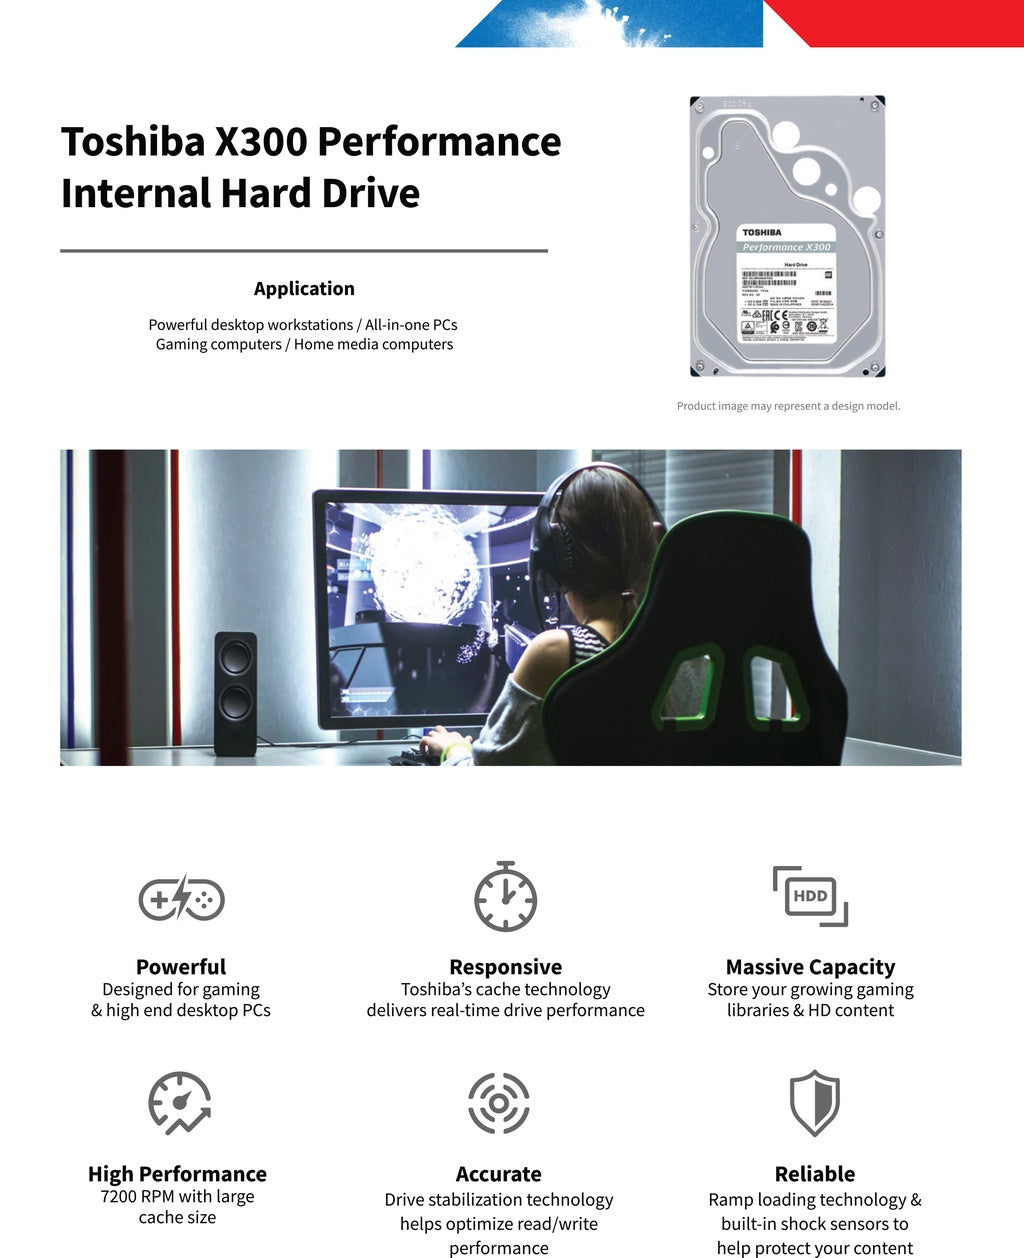 Toshiba P300 / X300 3.5'' 7200rpm SATA Internal Hard Disk